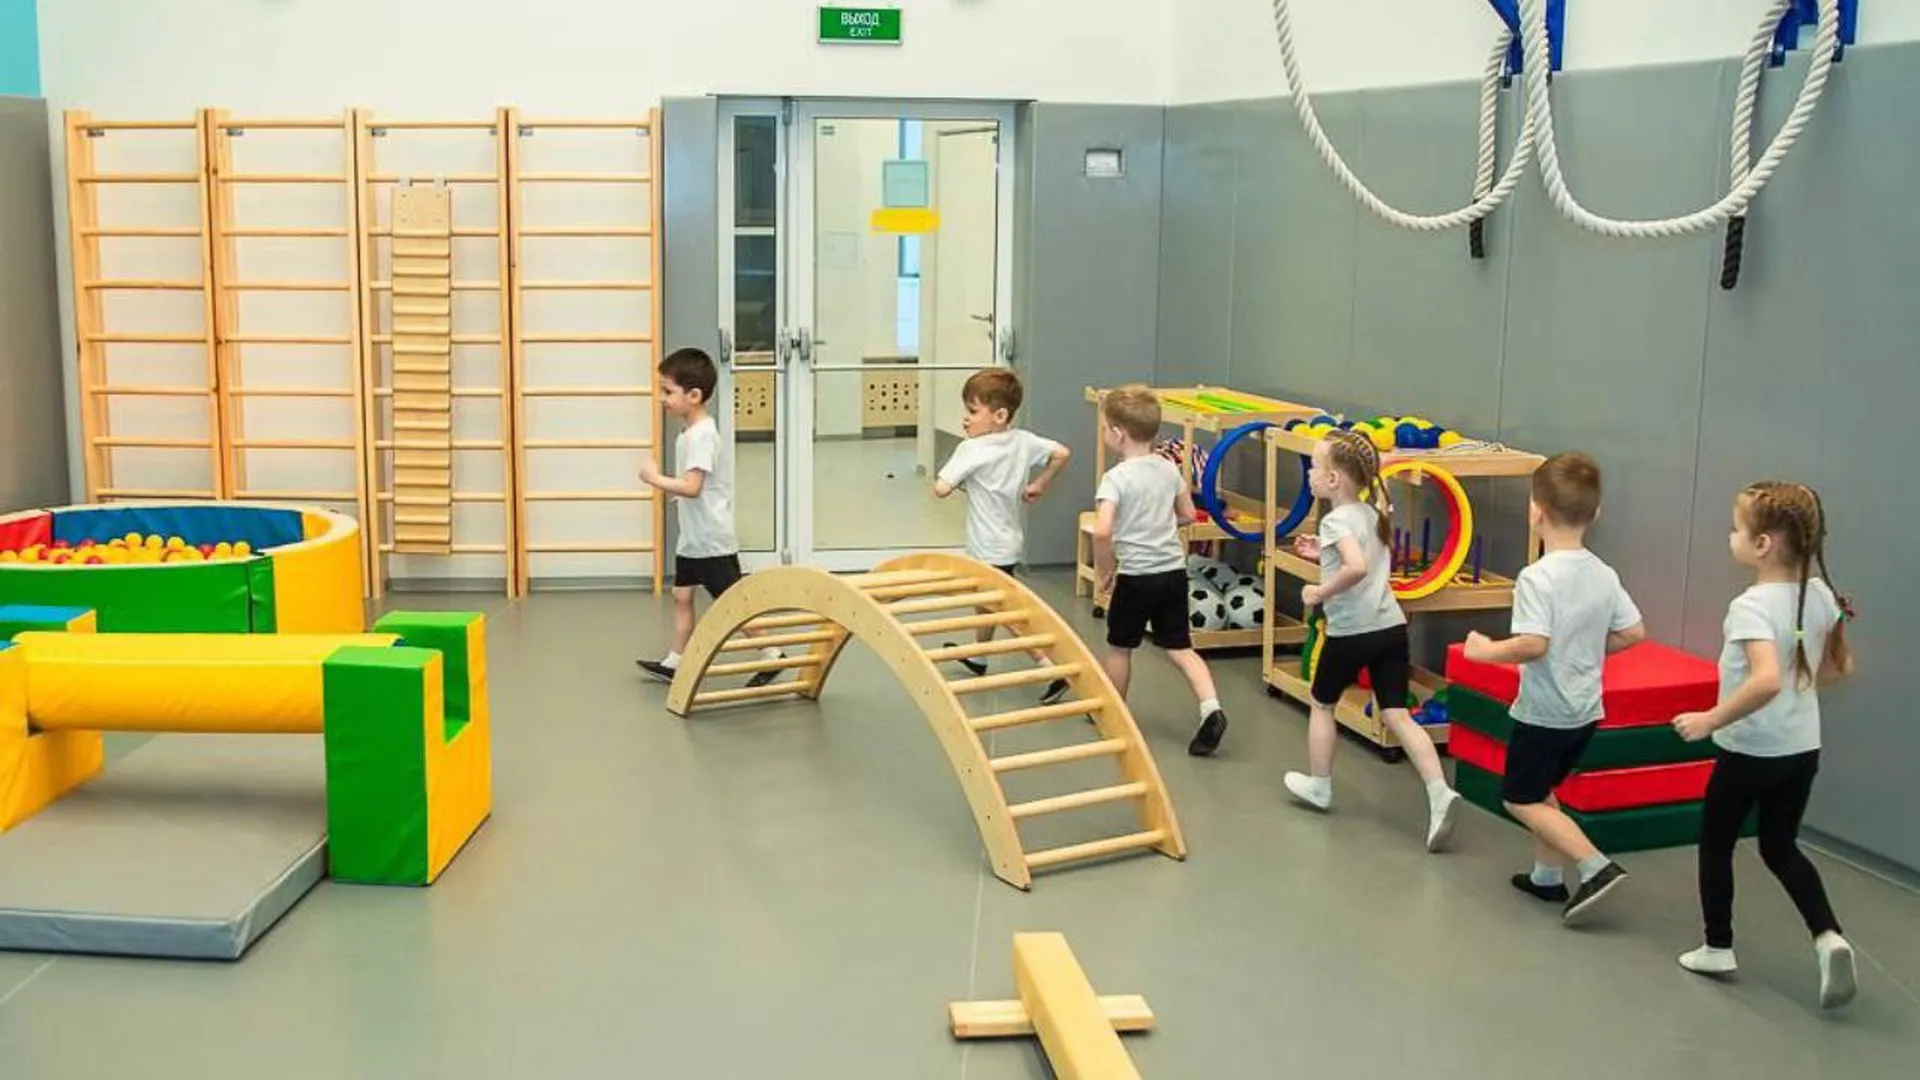 Новый детский сад уже открыл свои двери для первых воспитанников в Одинцово